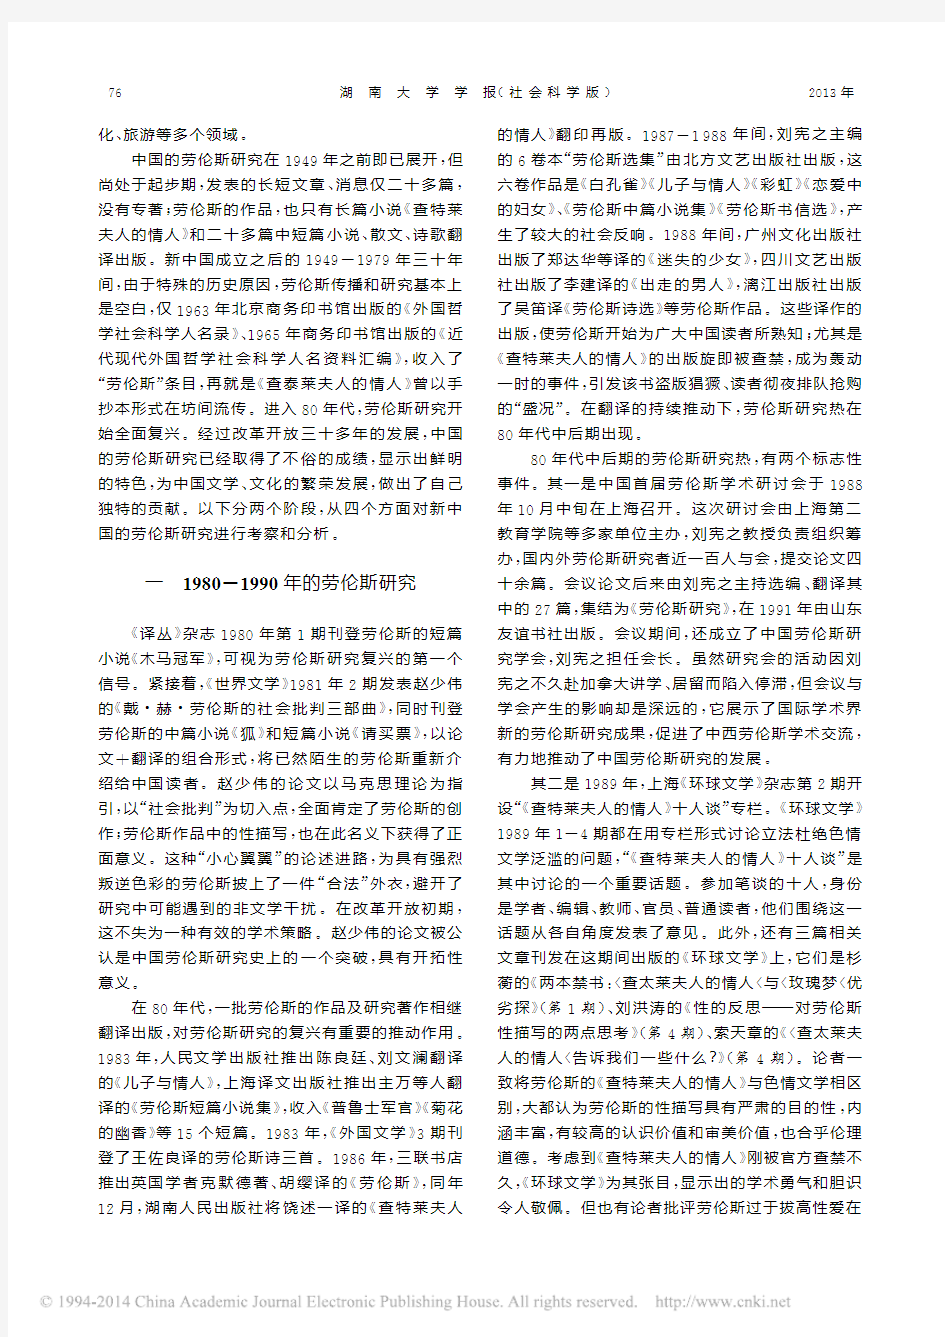 新中国60年劳伦斯研究之考察与分析_刘洪涛